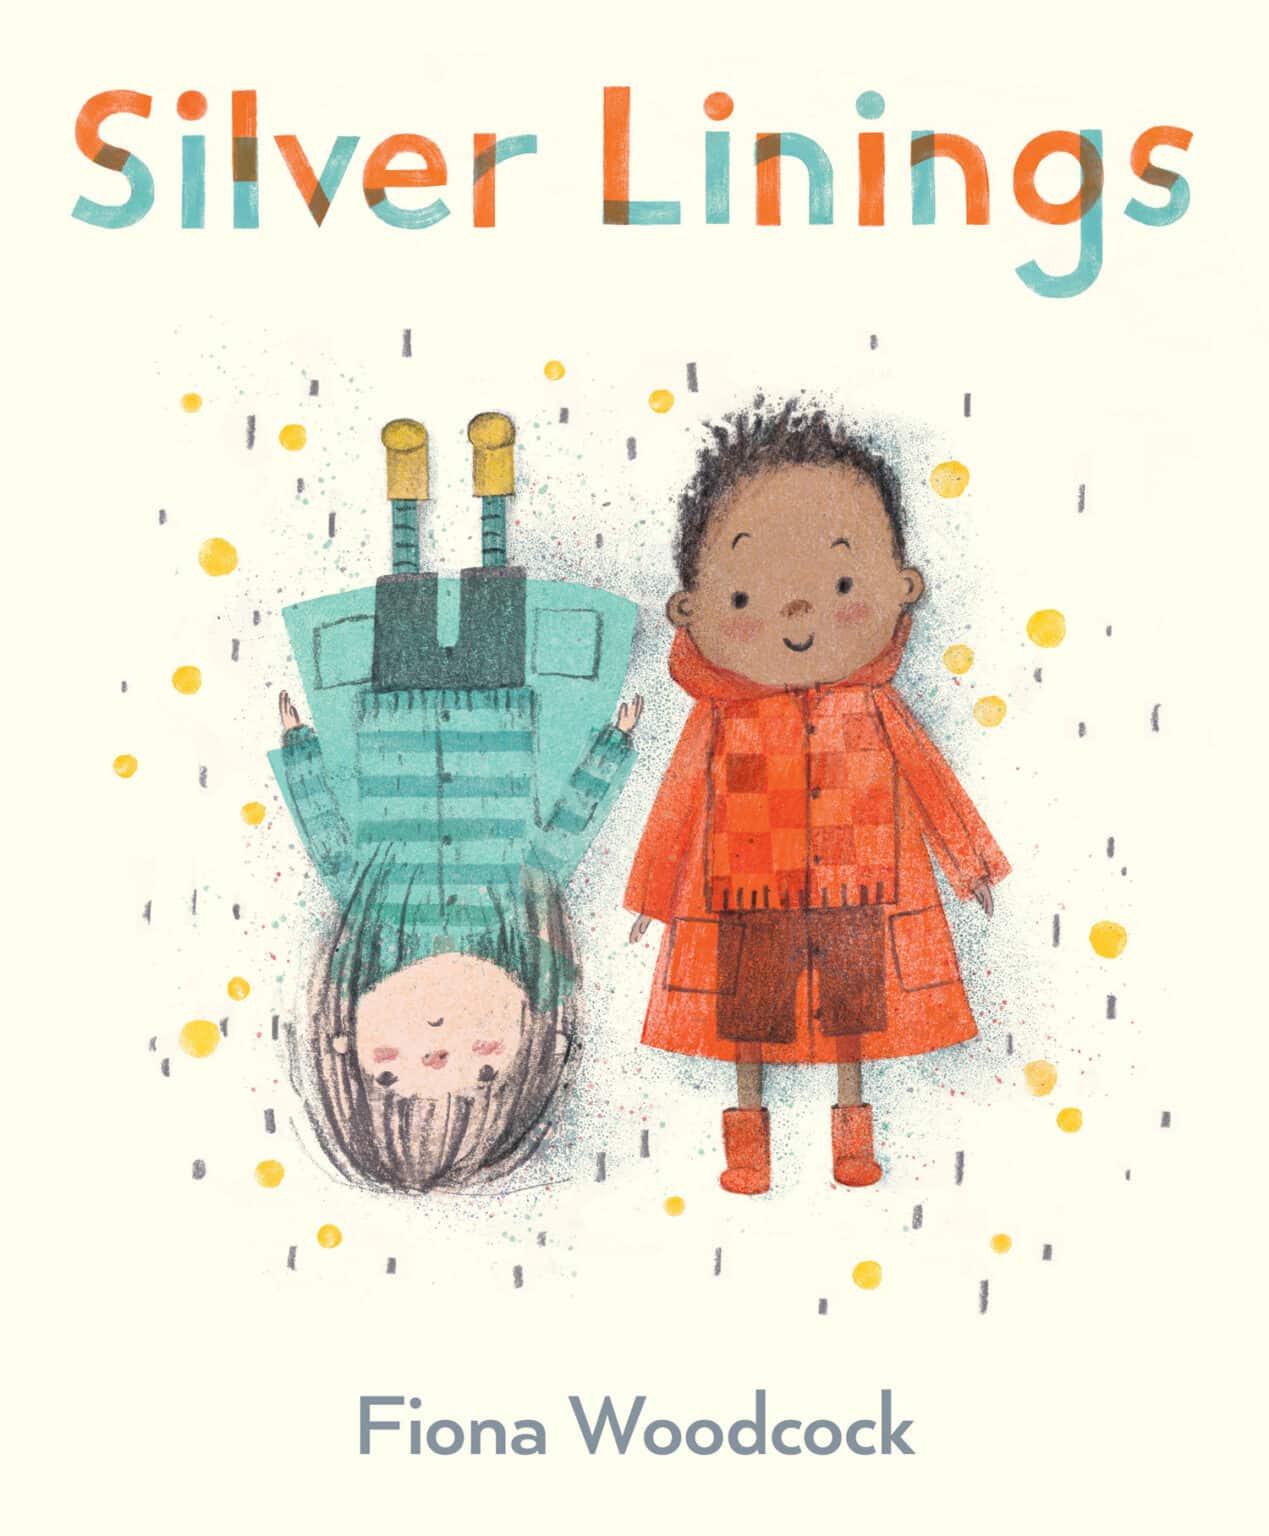 Silverlinings